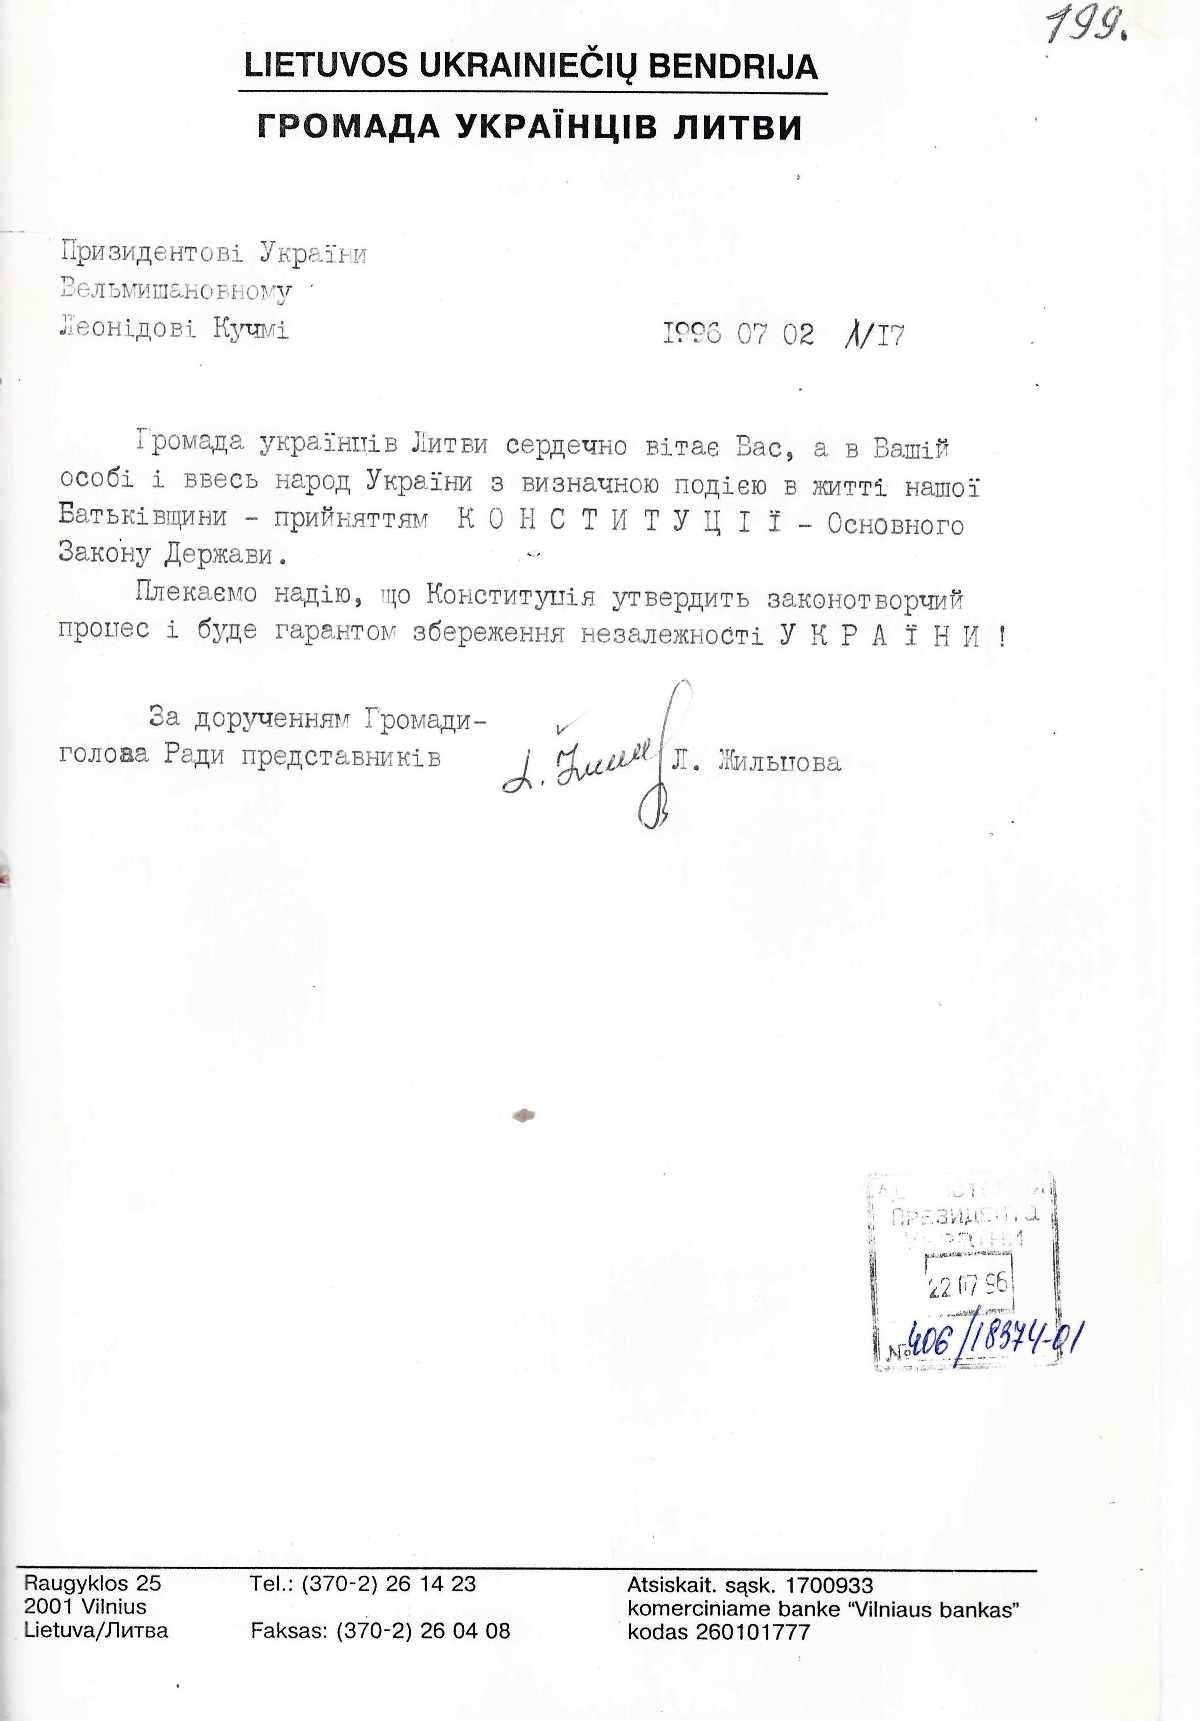 Привітання від Громади Українців Литви Президента України. 2 липня 1996 р.